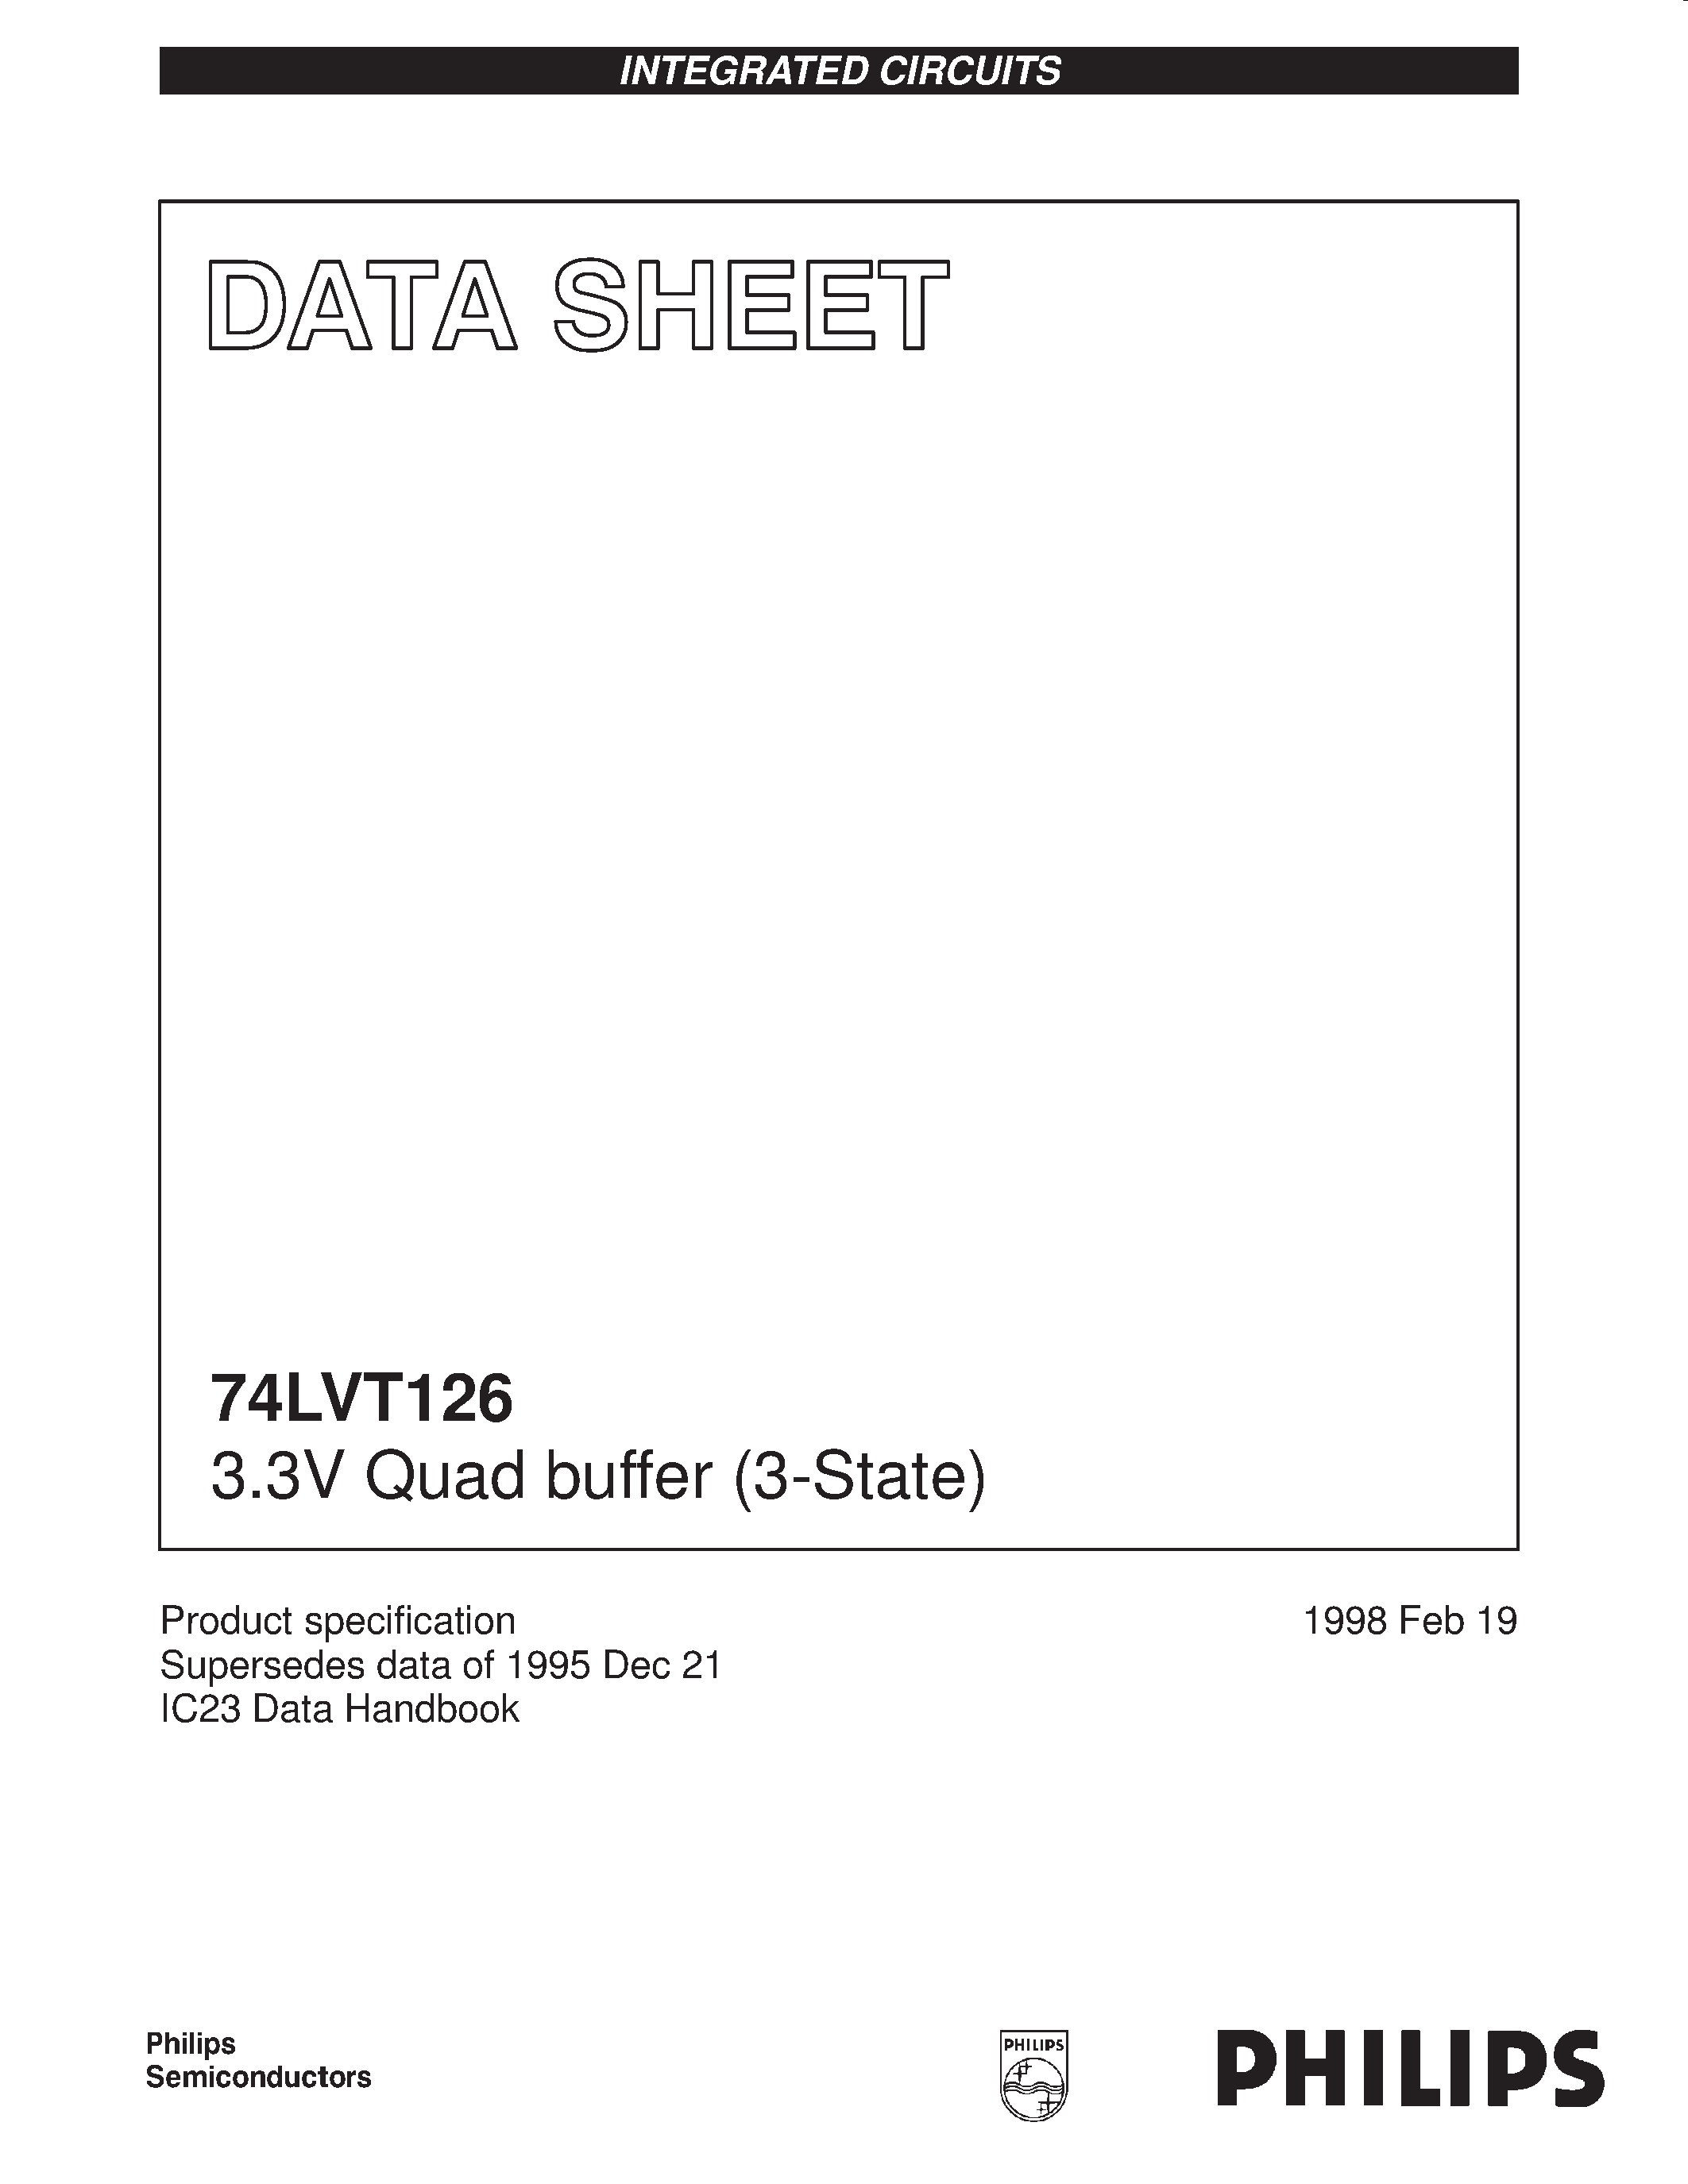 Даташит 74LVT126 - 3.3V Quad buffer 3-State страница 1